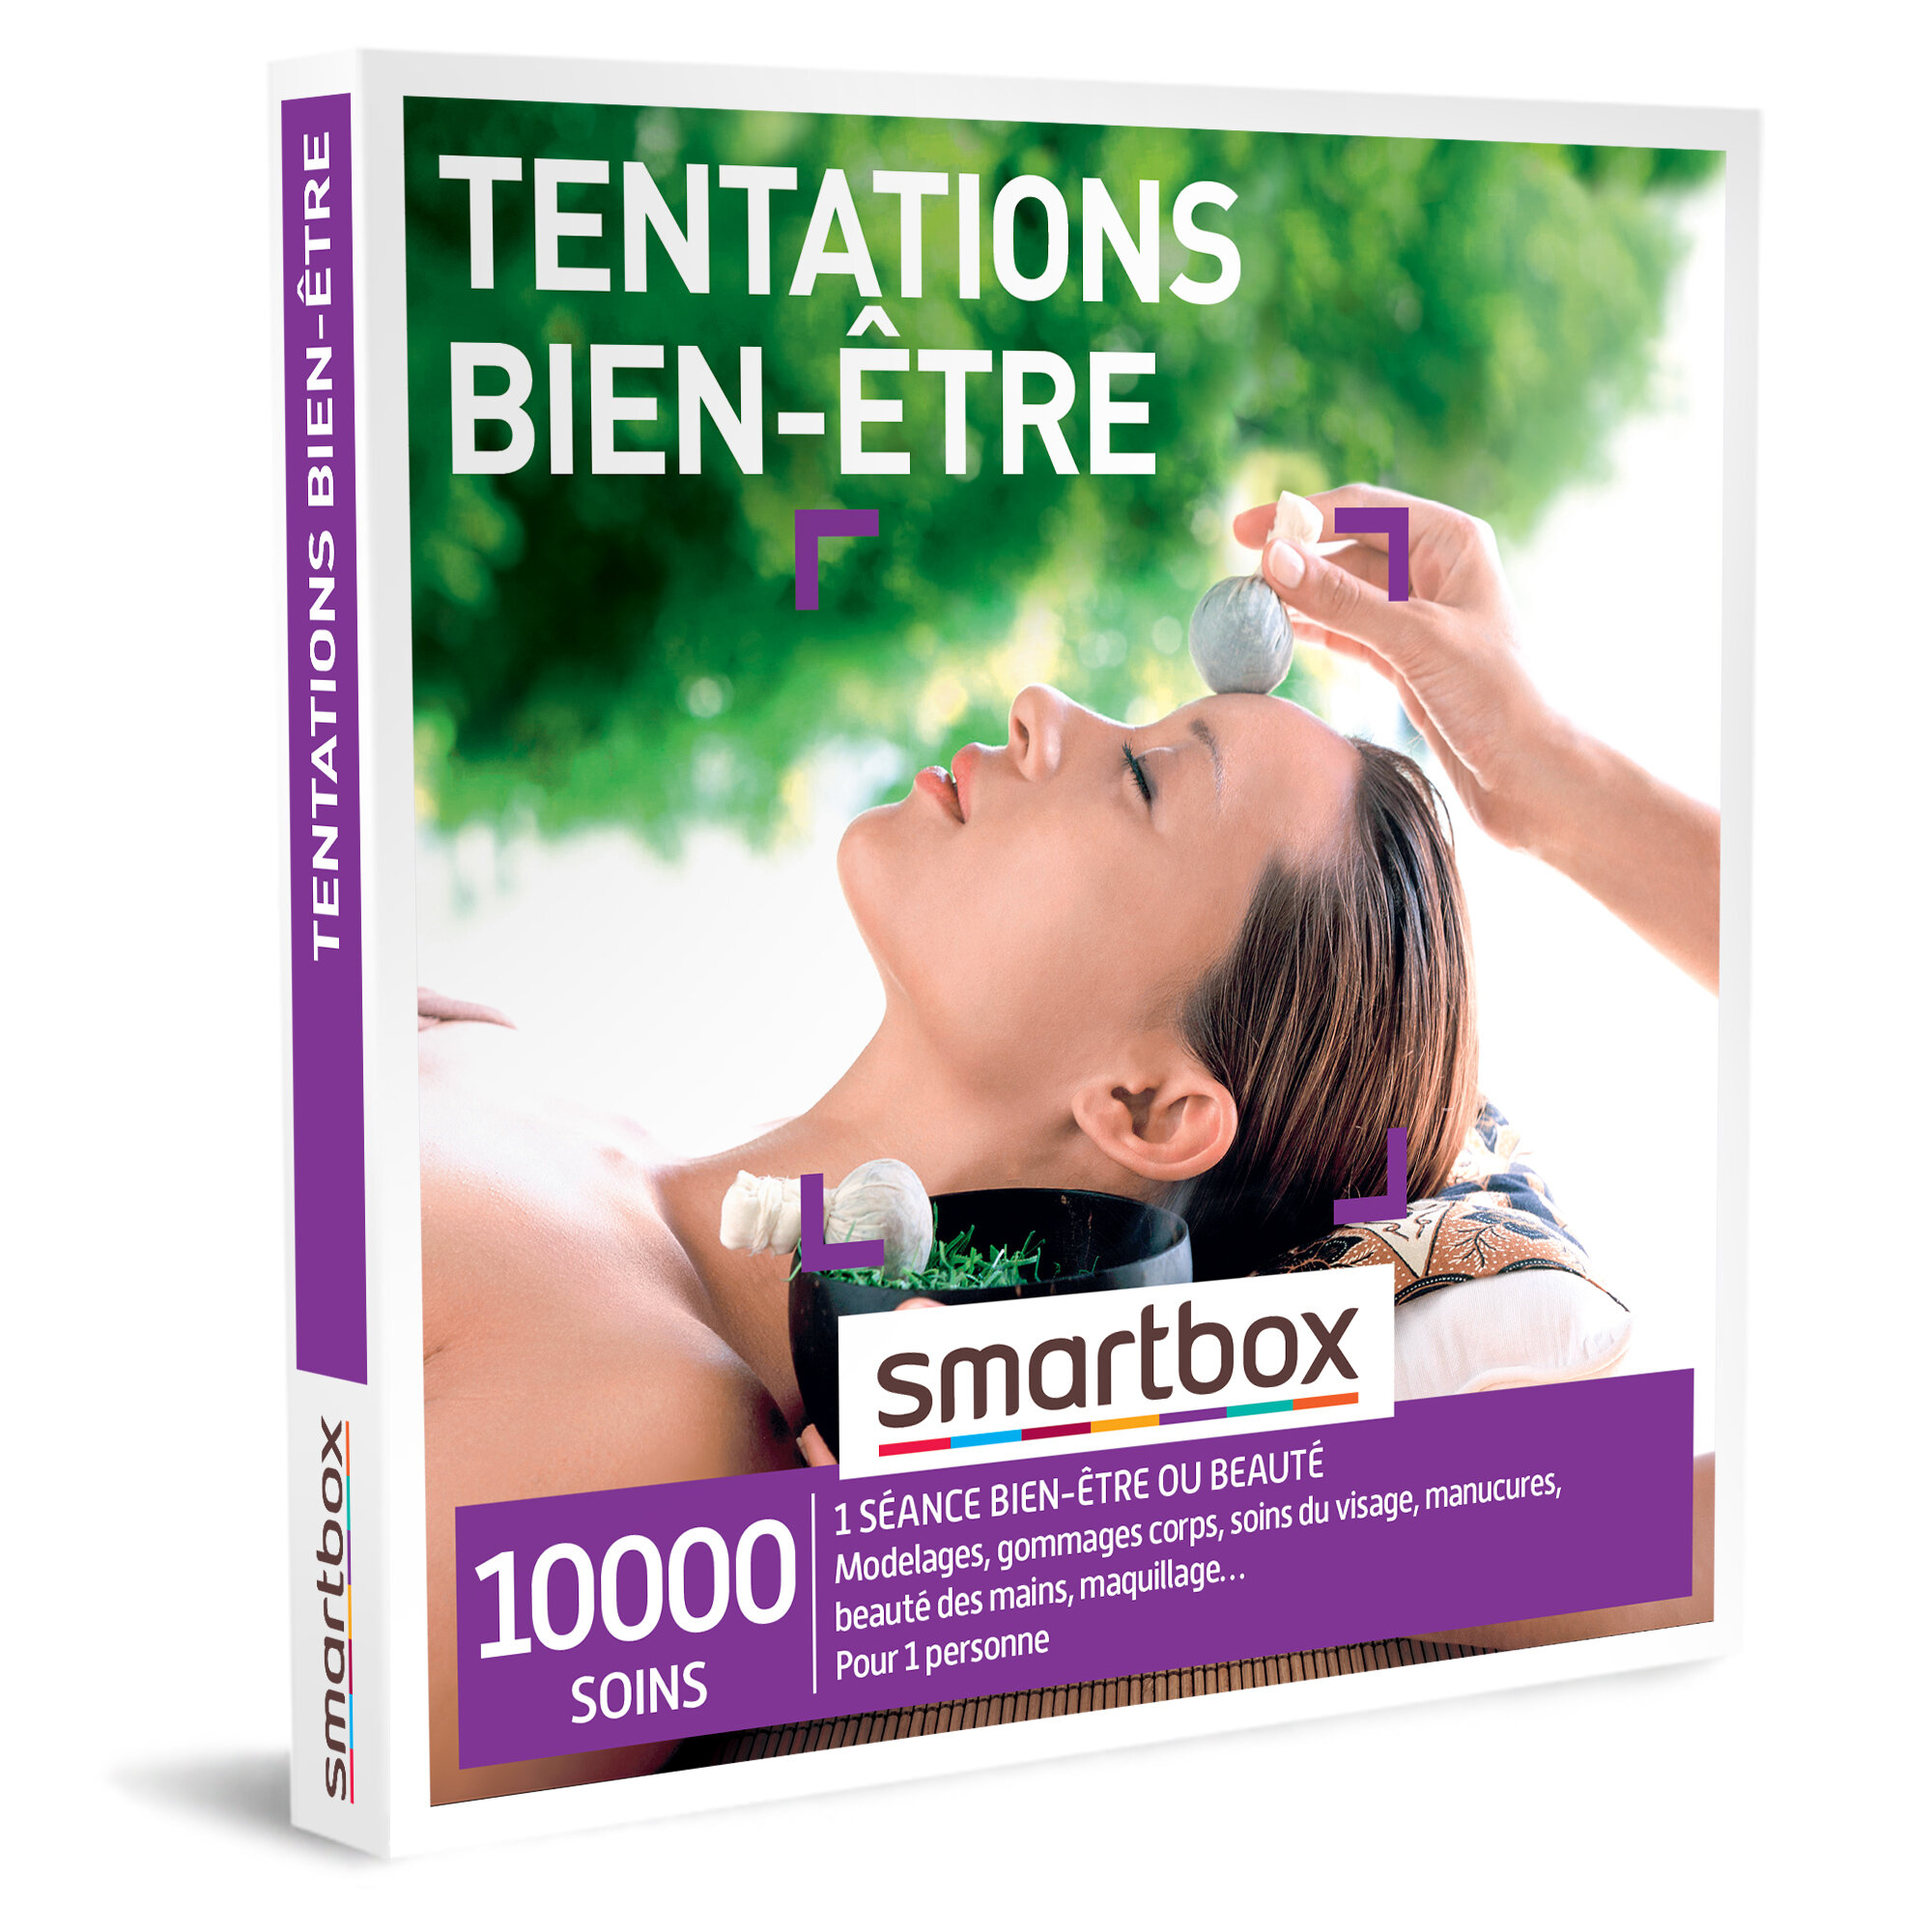 SMARTBOX - Coffret Cadeau - TENTATIONS BIEN-ÊTRE - 1 séance bien-être ou beauté pour 1 personne